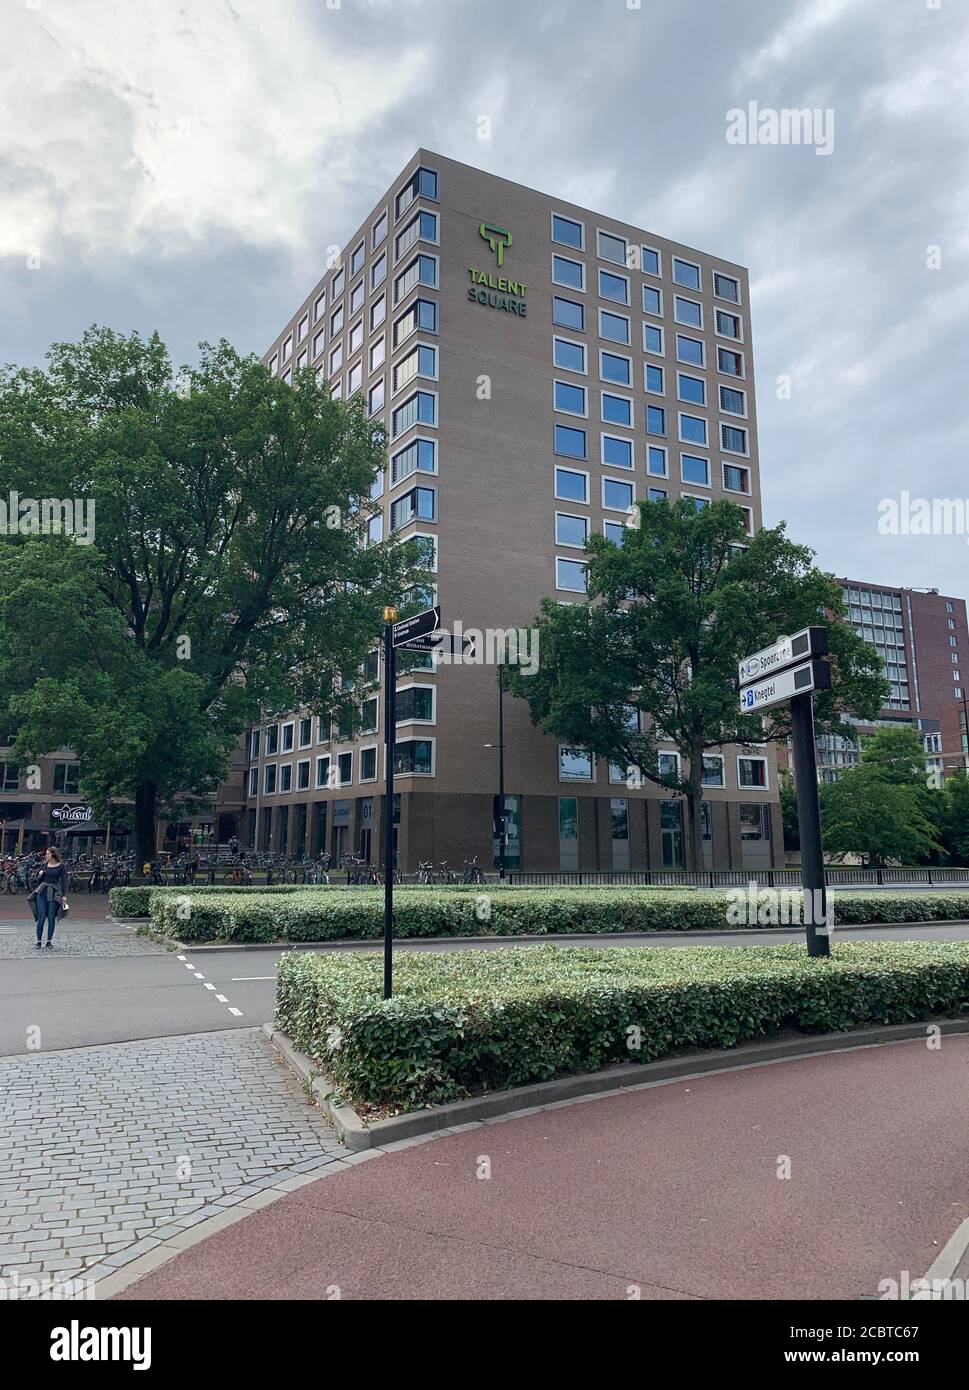 Edificio de viviendas para estudiantes de Talent Square con restaurante Masal y oficinas en la planta baja. Tilburg, Brabante del Norte / países Bajos. Foto de stock